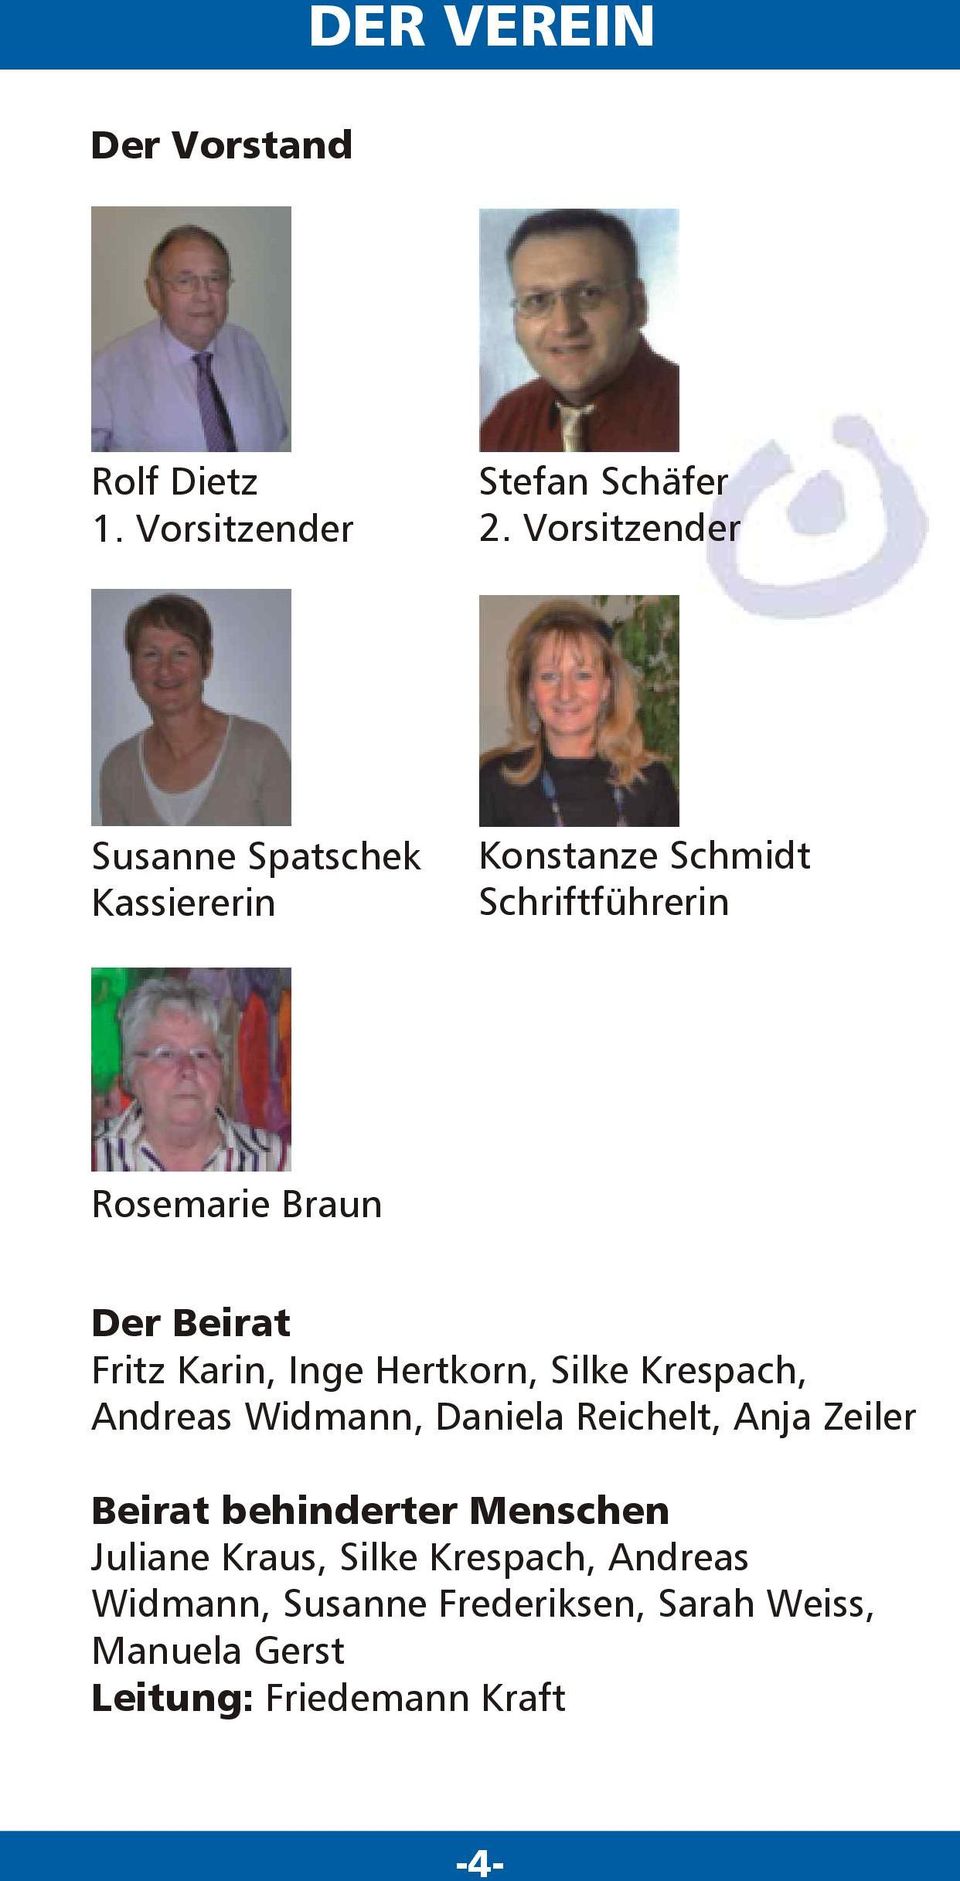 Beirat Fritz Karin, Inge Hertkorn, Silke Krespach, Andreas Widmann, Daniela Reichelt, Anja Zeiler